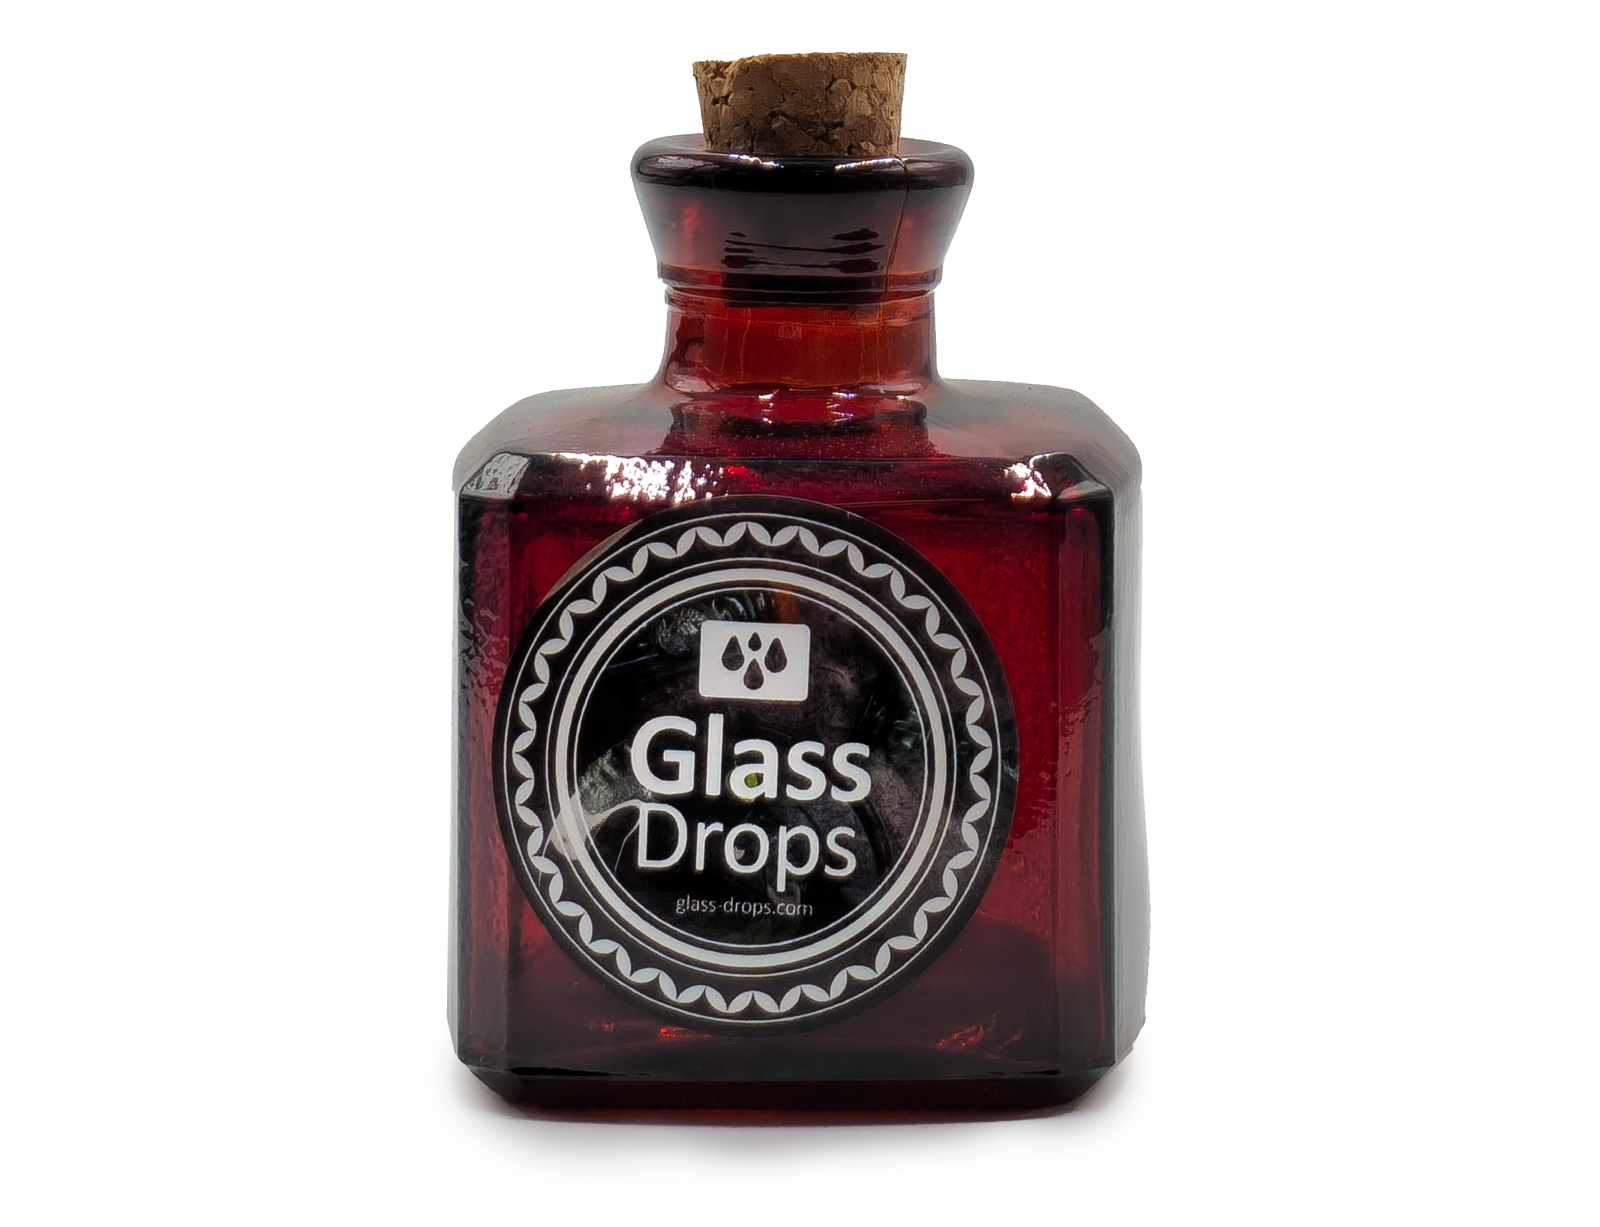 Εικόνα Διακοσμητικό Μπουκάλι με πώμα Glass Drops Cuadrada (5322DB738) Aπό 100% ανακυκλωμένο γυαλί, Xωρητικότητας 200ml, Διαστάσεων Ø 7 x Υ 10 cm, Τerracotta